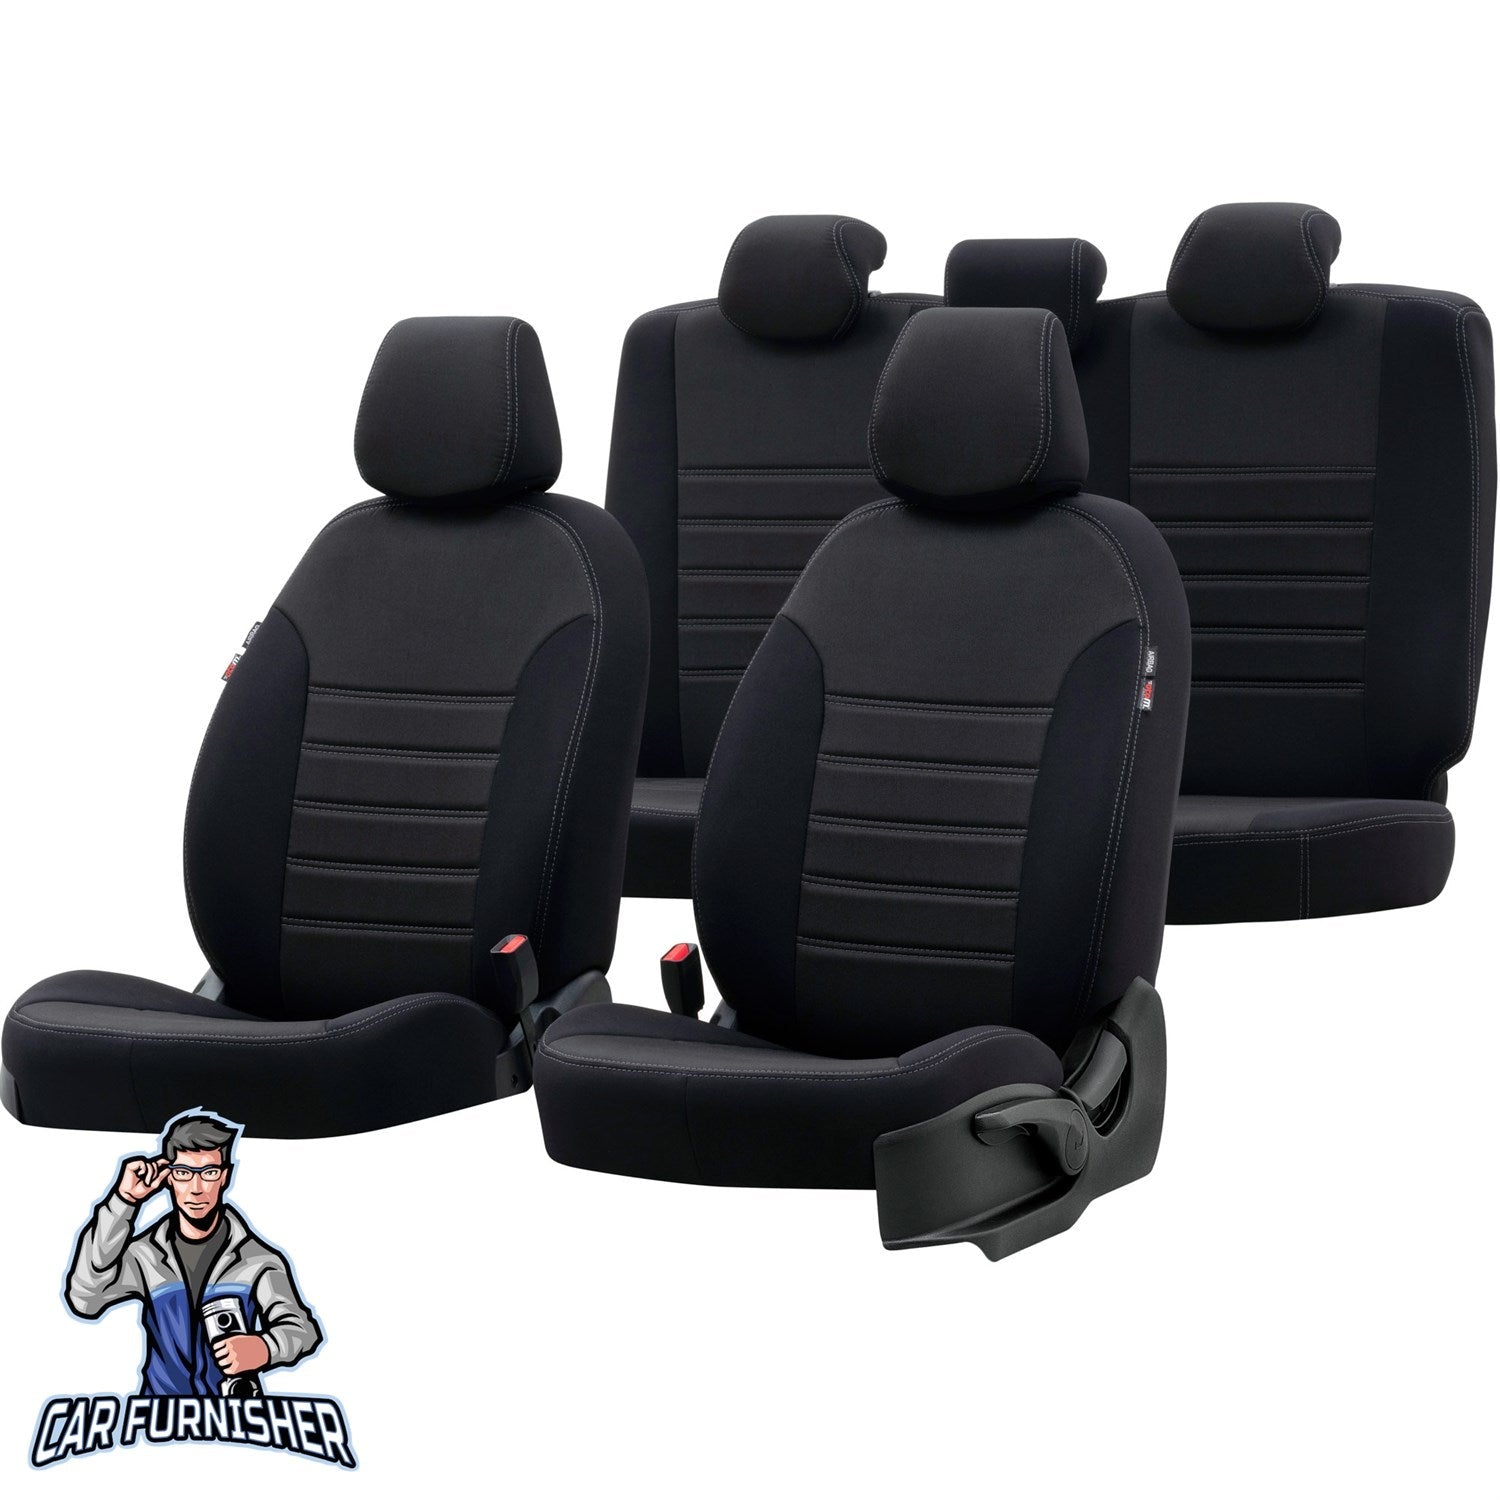 Volkswagen Passat Seat Cover Original Jacquard Design Black Jacquard Fabric